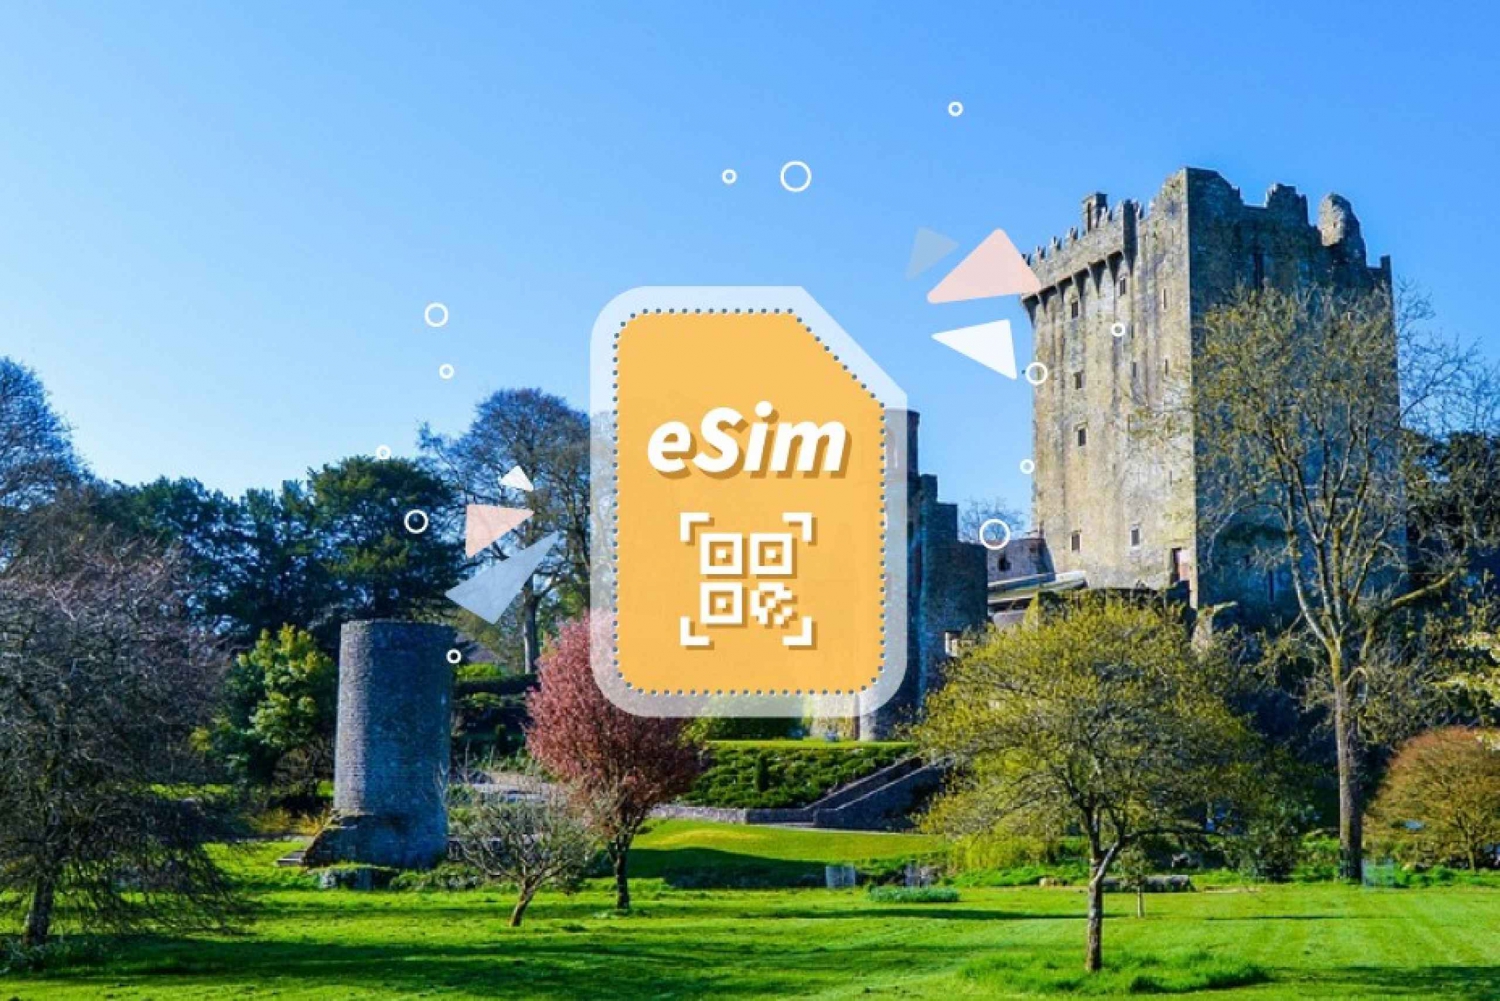 Irlandia/Europa: Pakiet danych mobilnych eSim